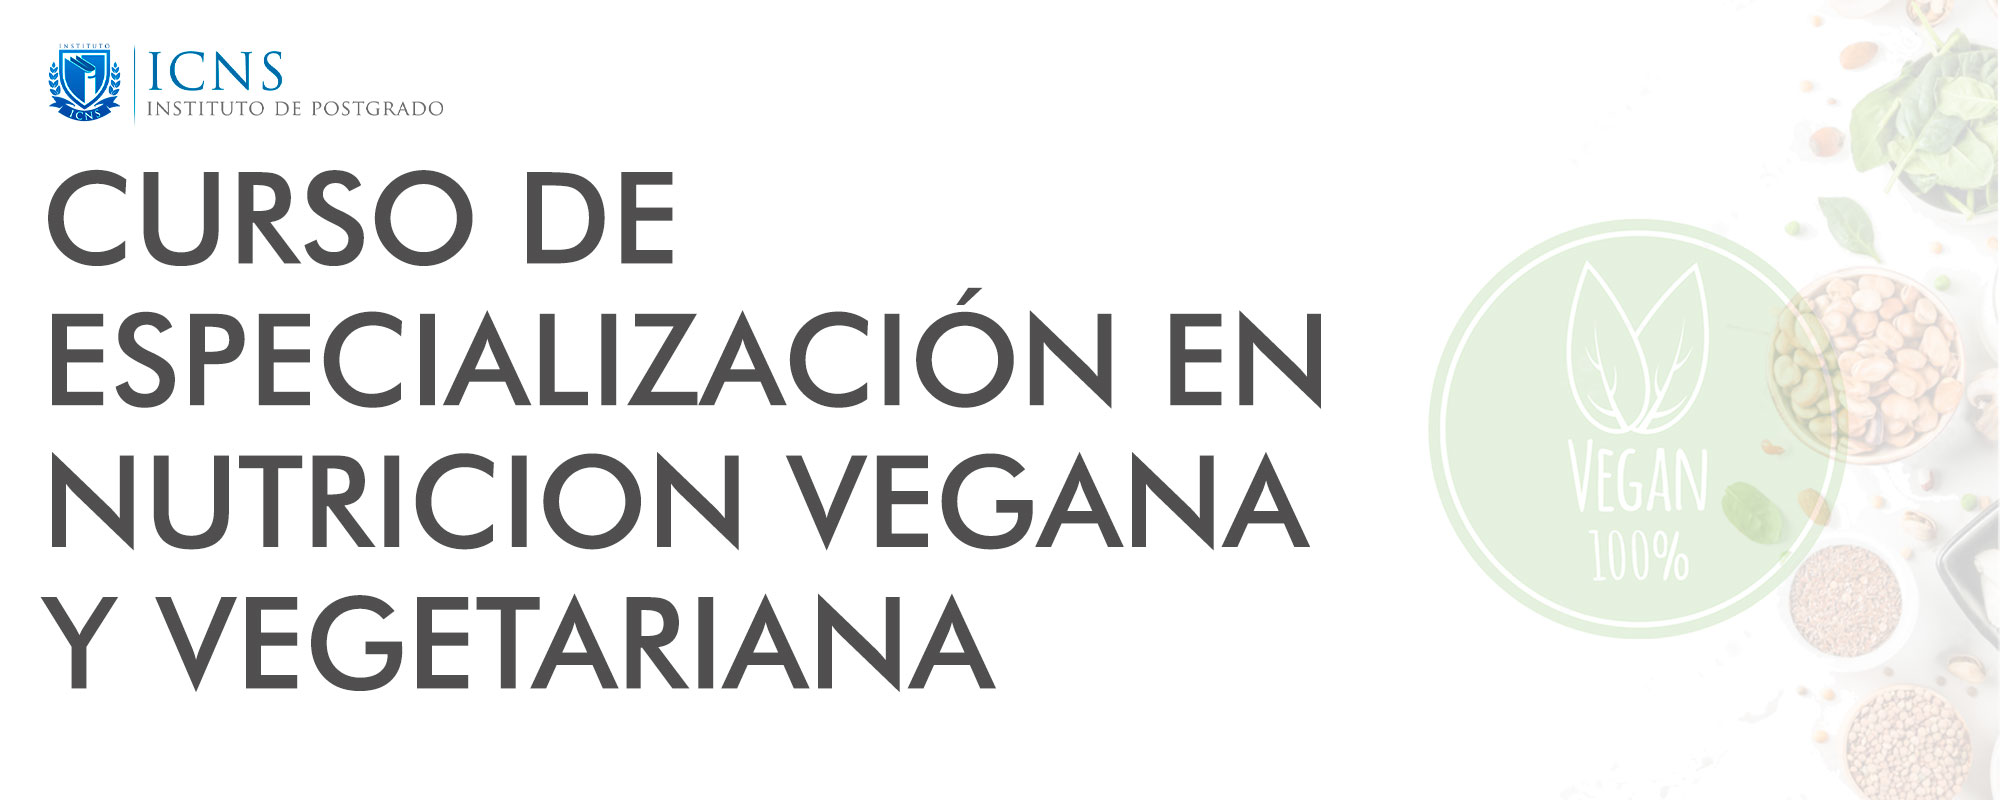 Especialización en Nutrición Clínica y Deportiva Vegana y Vegetariana 